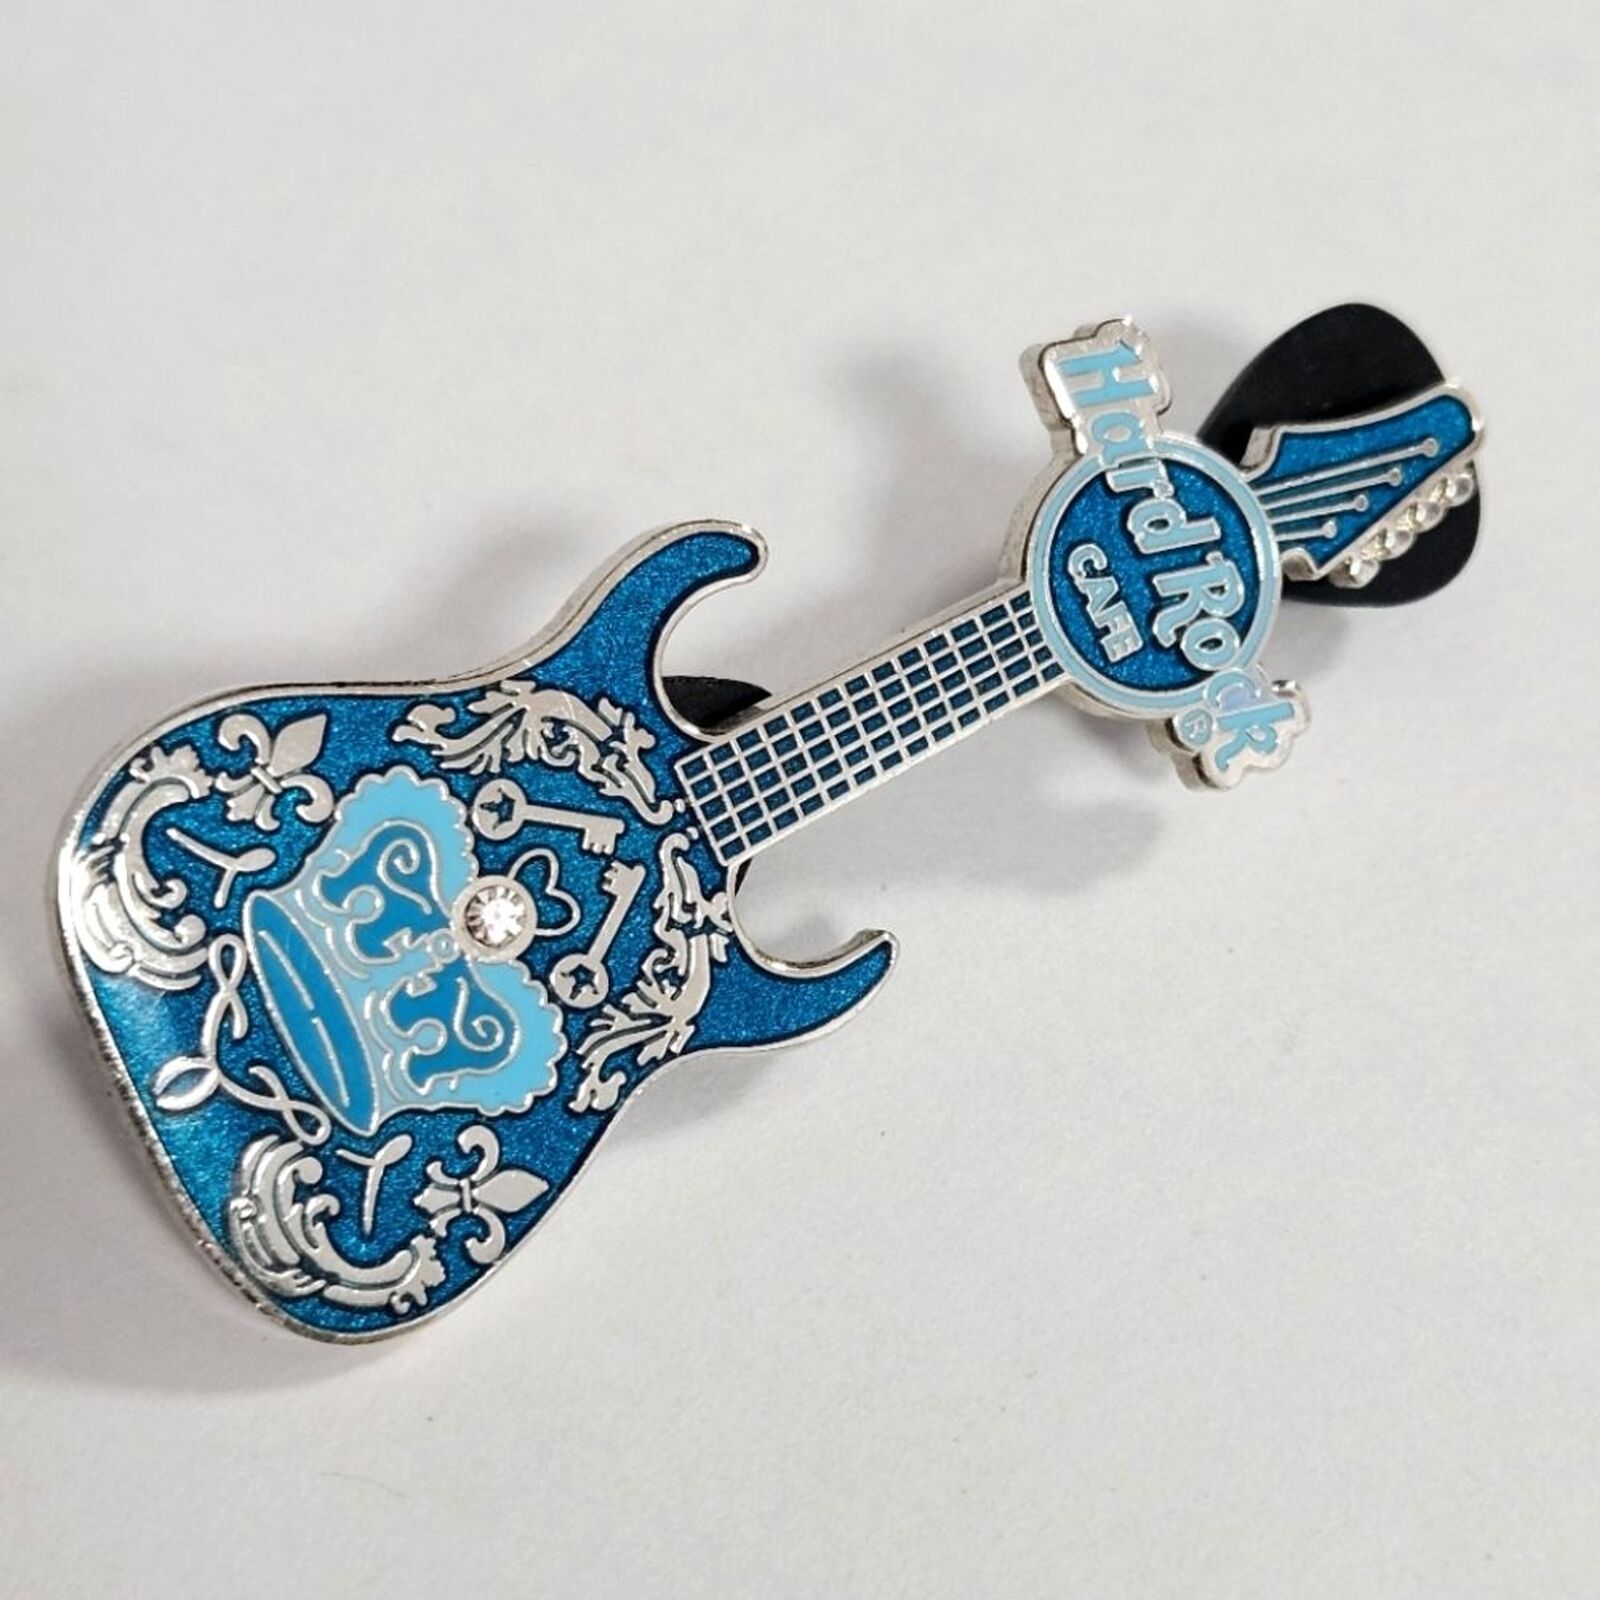 Hard Rock Cafe Enamel Blue Crown Rhinestone Guitar Limited Edition Brooch Pin